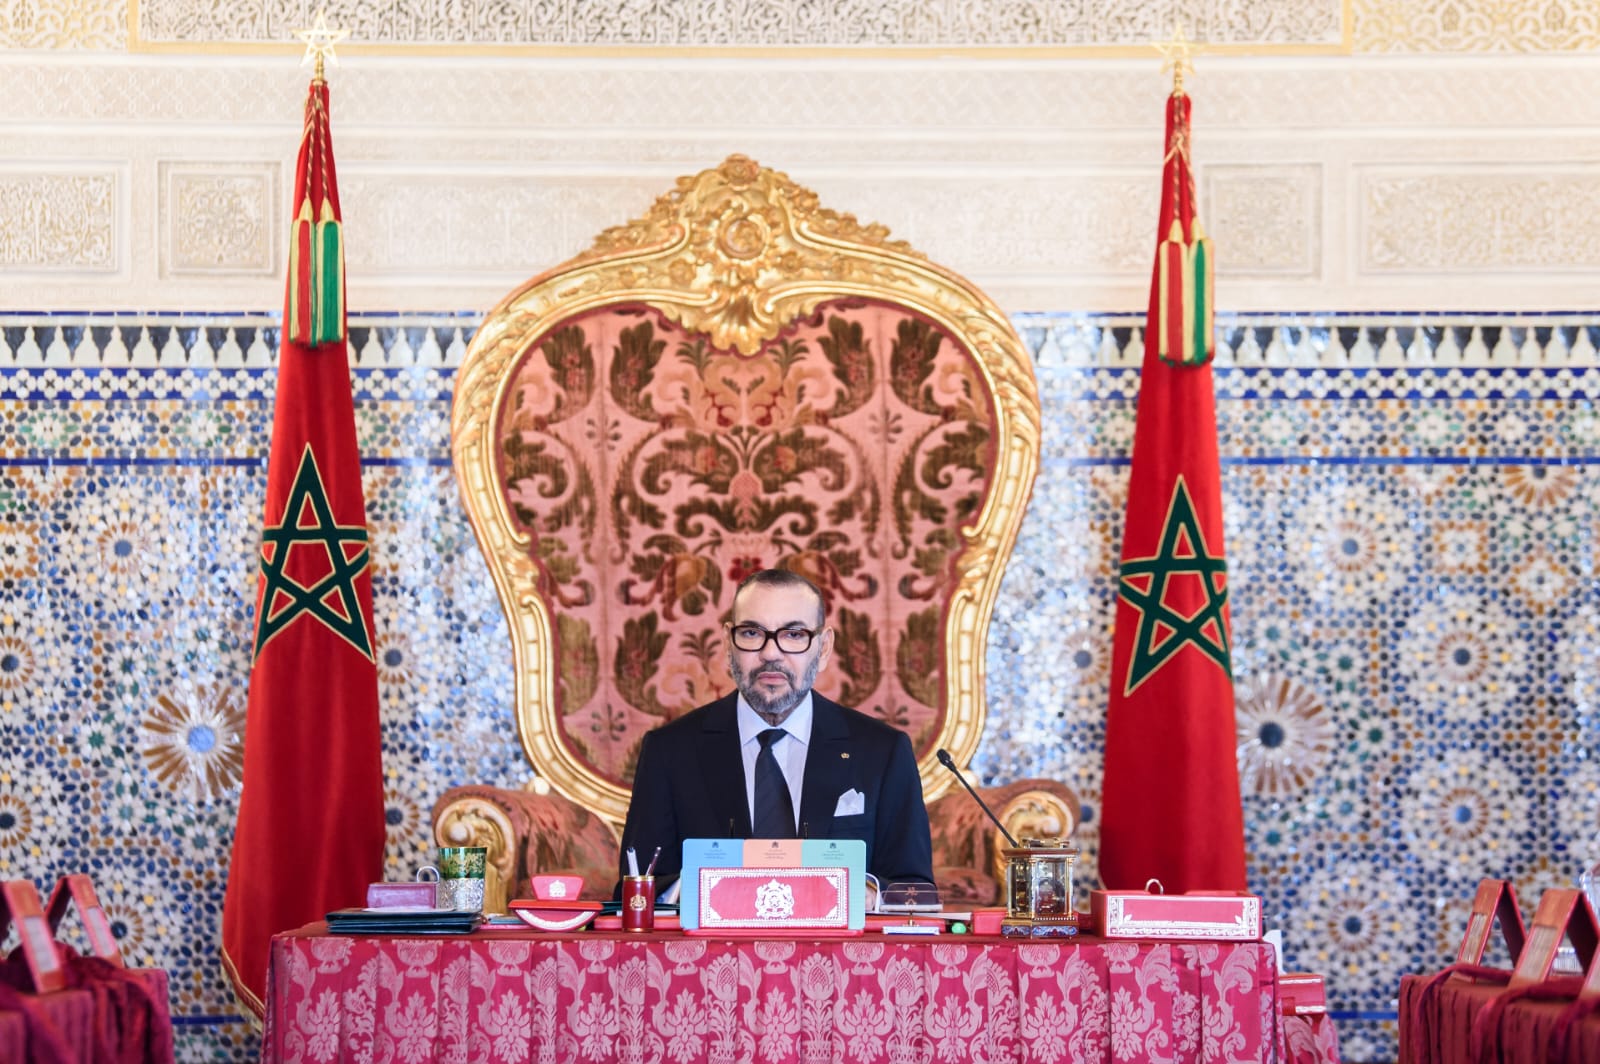 Conseil des ministres : Voici les nouvelles nominations approuvées par le Roi Mohammed VI